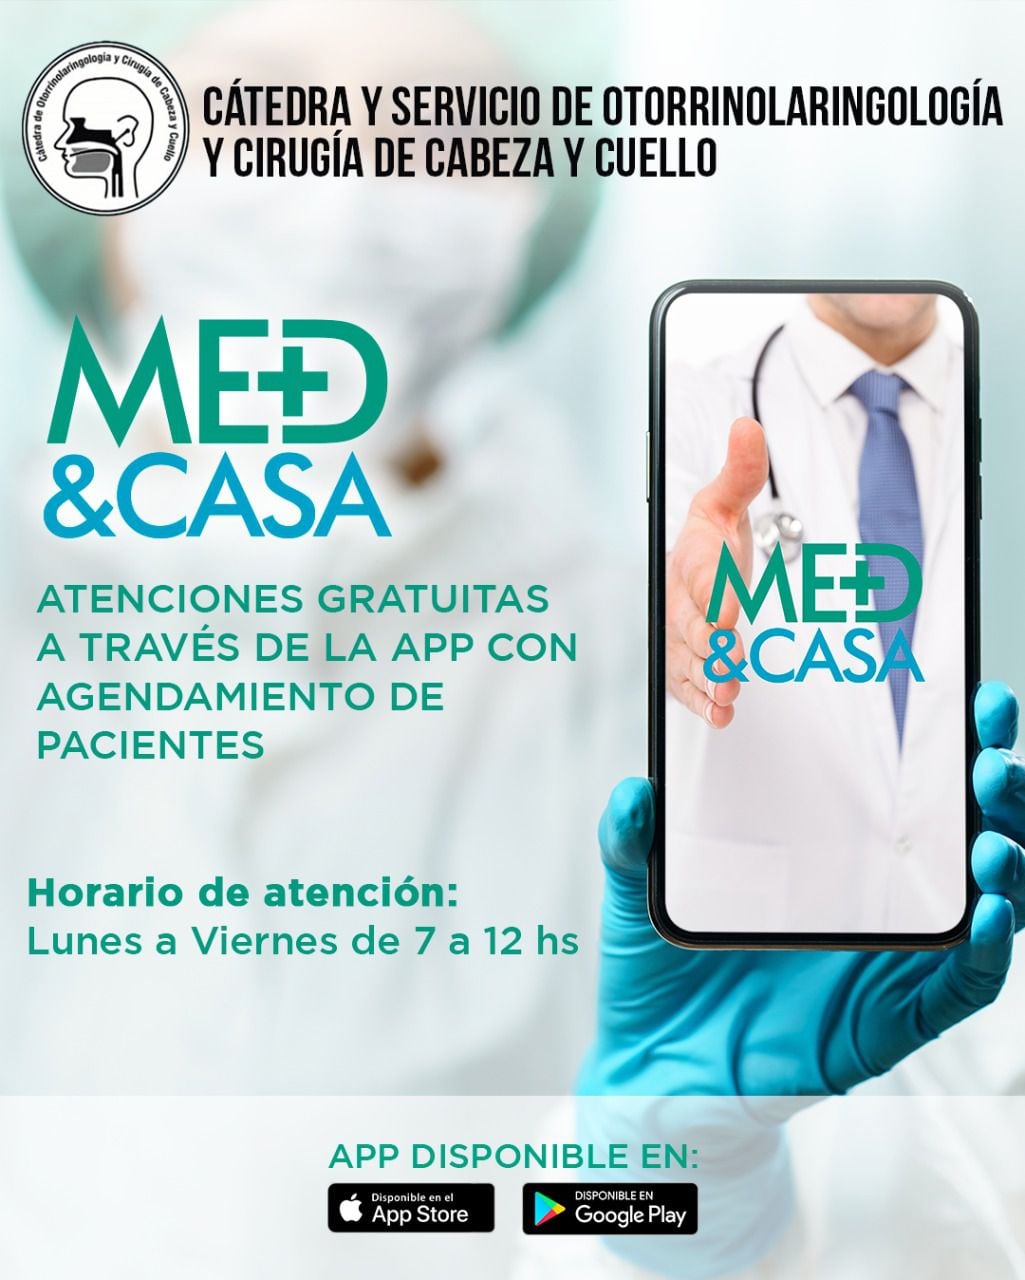 La Cátedra y Servicio de Otorrinolaringología del Hospital de Clínicas implementa desde este lunes un servicio de consultas en línea a través de la app Med&Casa;.